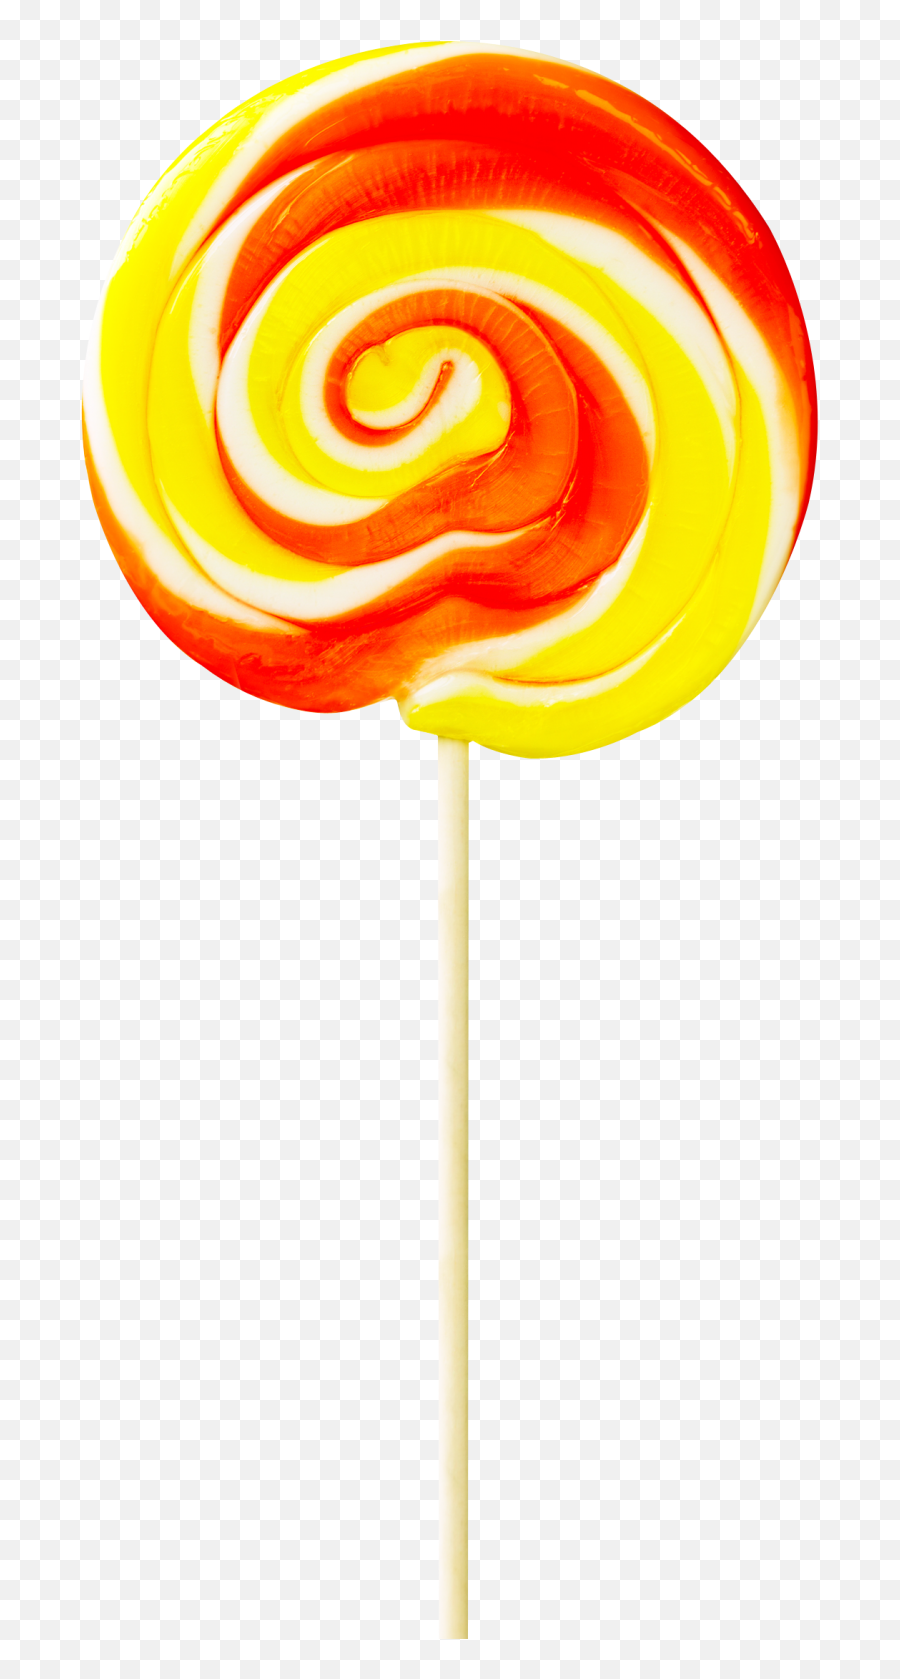 Lollipop Png Image - Permen Lollipop,Lollipop Transparent